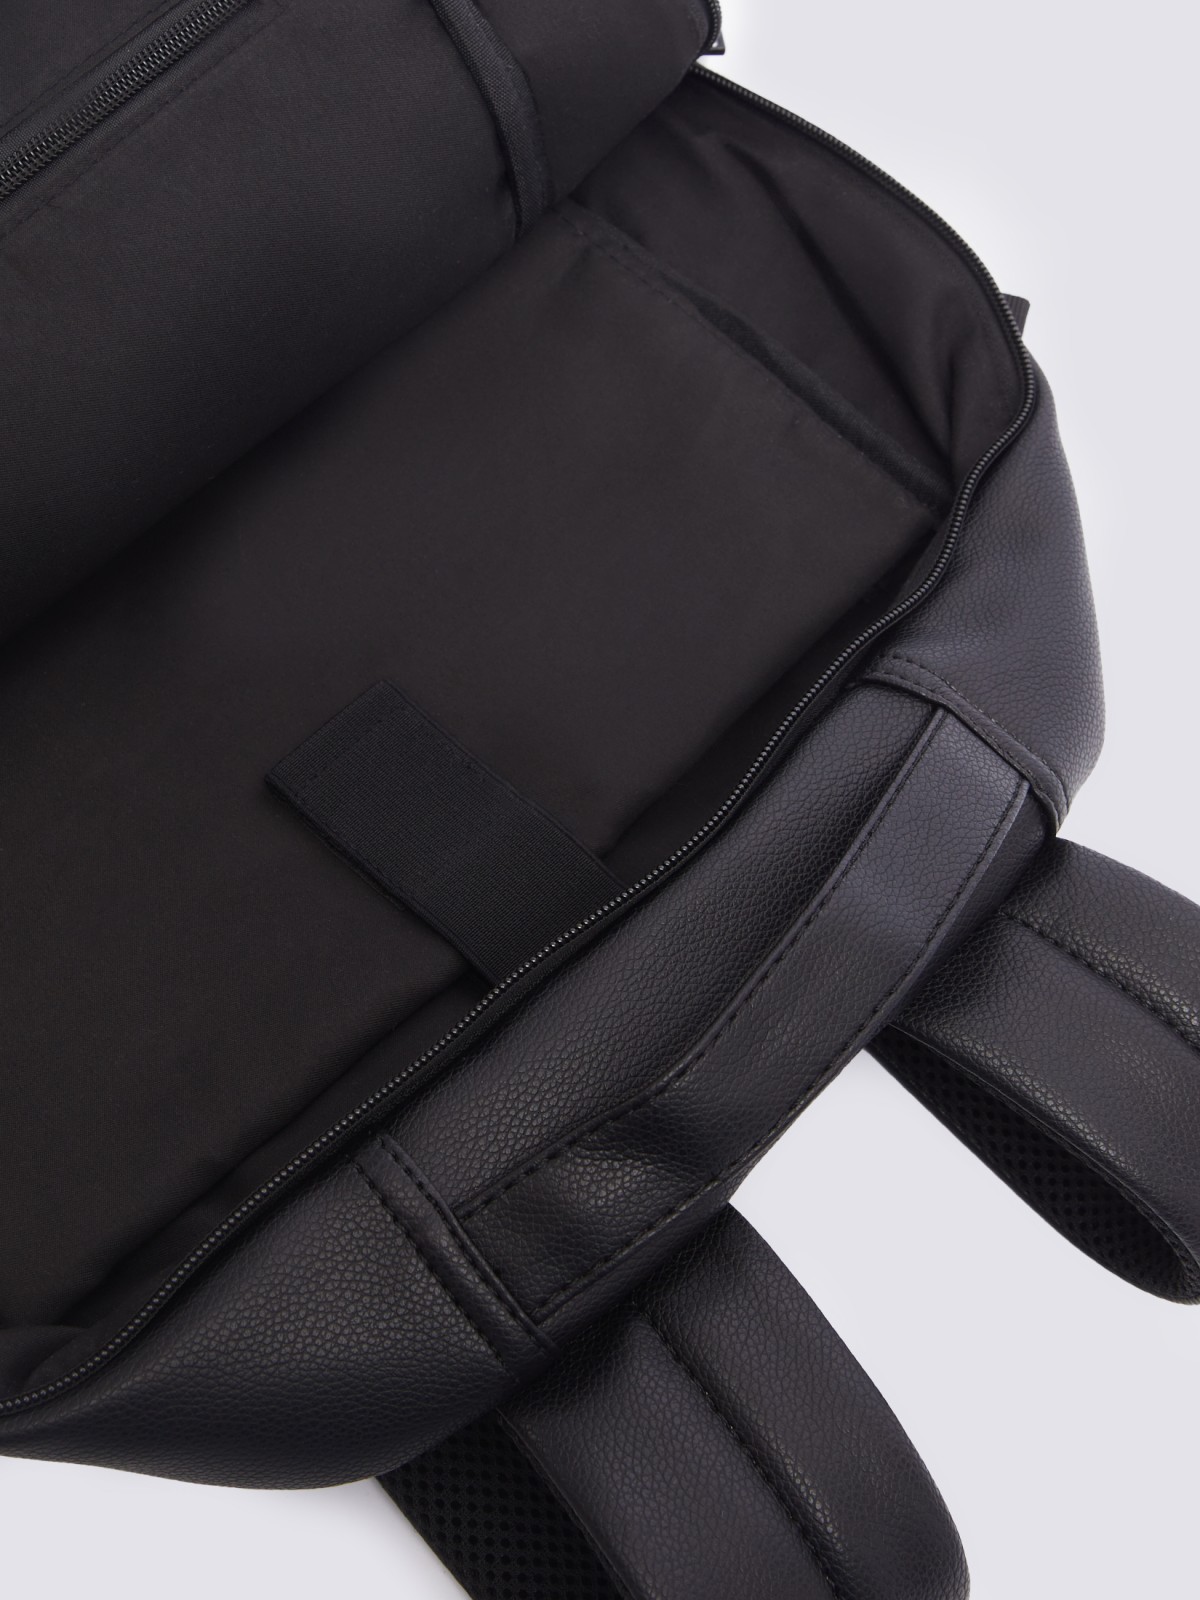 Городской рюкзак из экокожи с отделением для ноутбука/планшета zolla 014119462035, цвет черный, размер No_size - фото 5